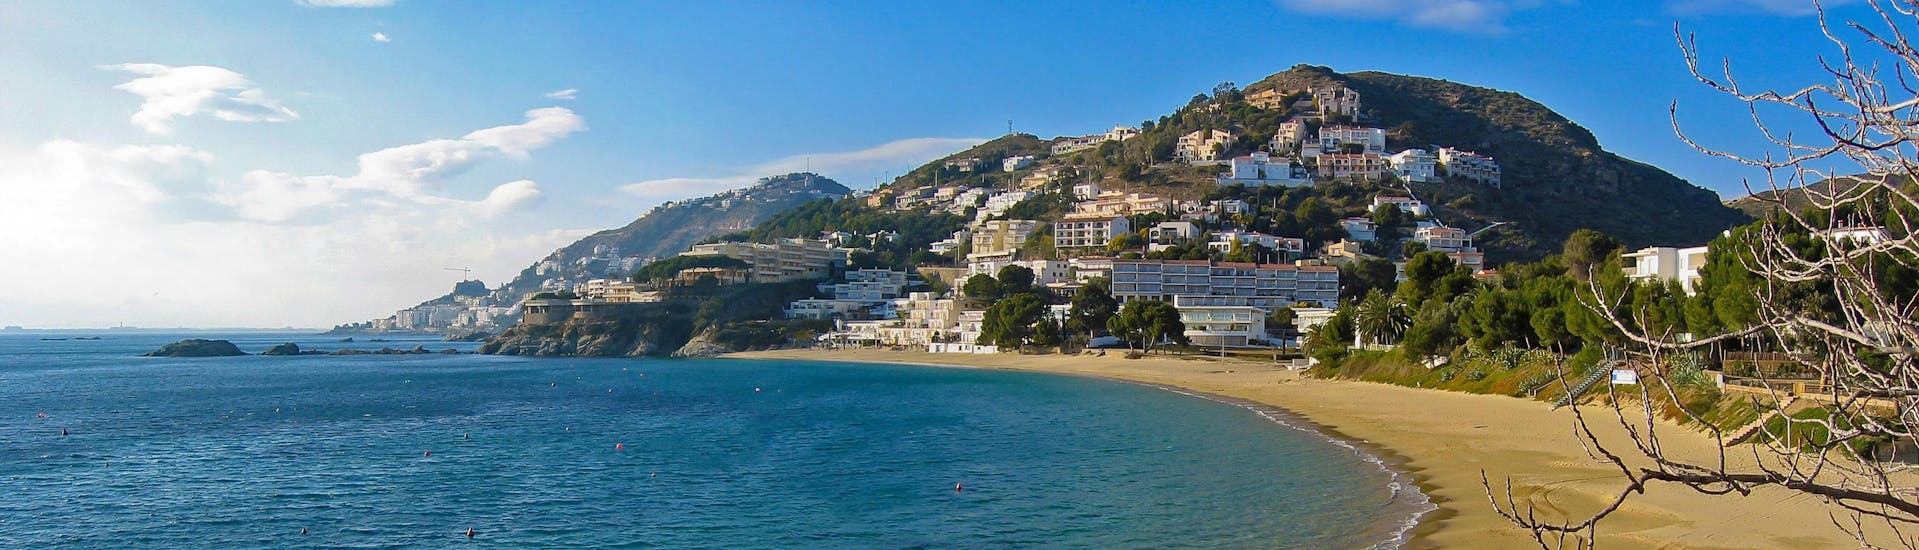 Photo de la côte de Roses, Costa Brava, une destination populaire pour les excursions en bateau.